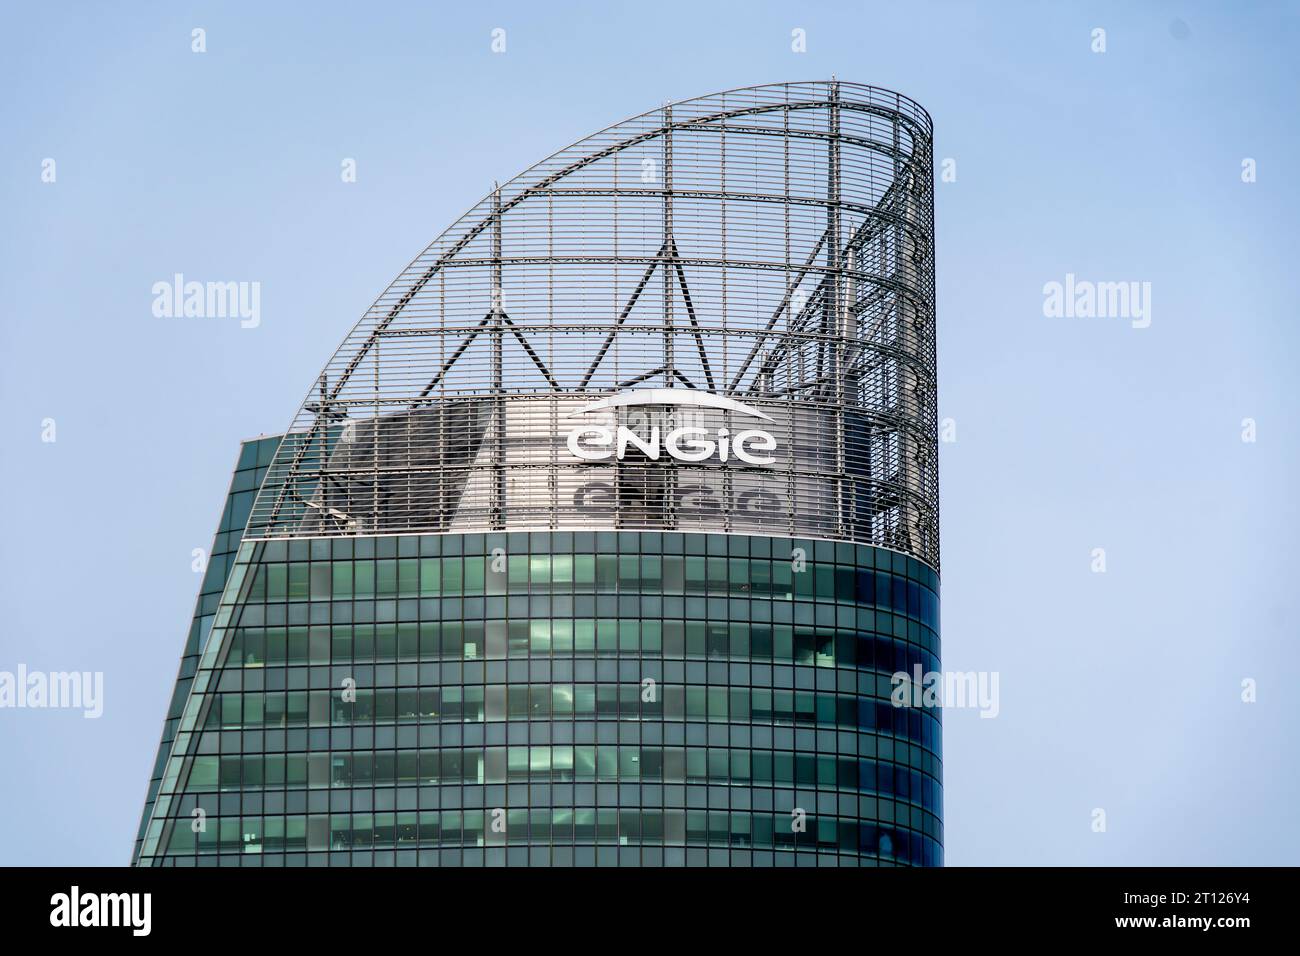 Vue extérieure de la tour abritant le siège social d’Engie, un groupe industriel français de l’énergie Banque D'Images